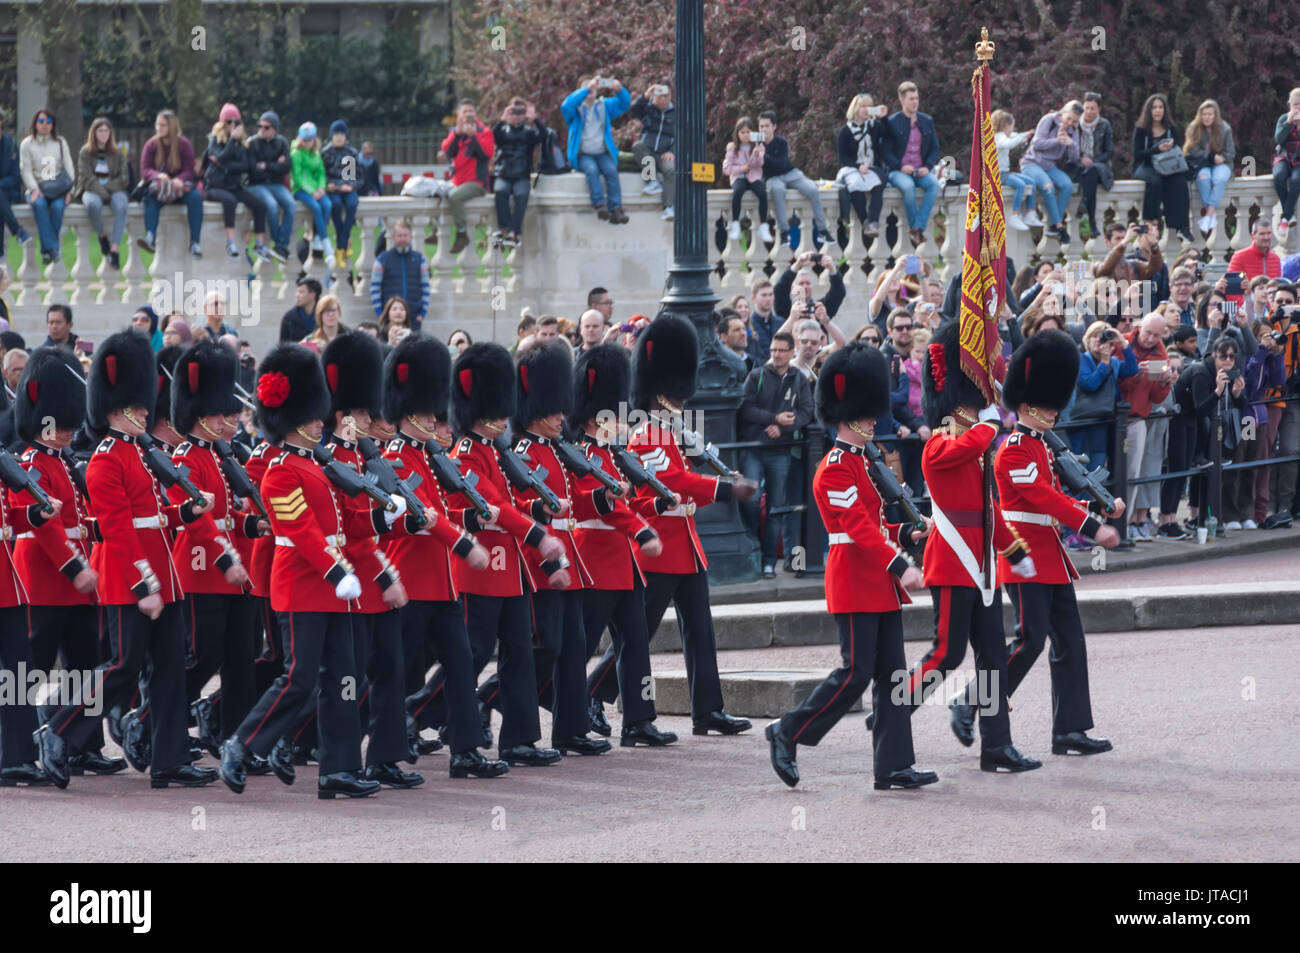 Musique de la Coldstream Guards avec leur niveau, au cours de l'évolution de la garde, le palais de Buckingham, Londres, Angleterre, Royaume-Uni, Europe Banque D'Images